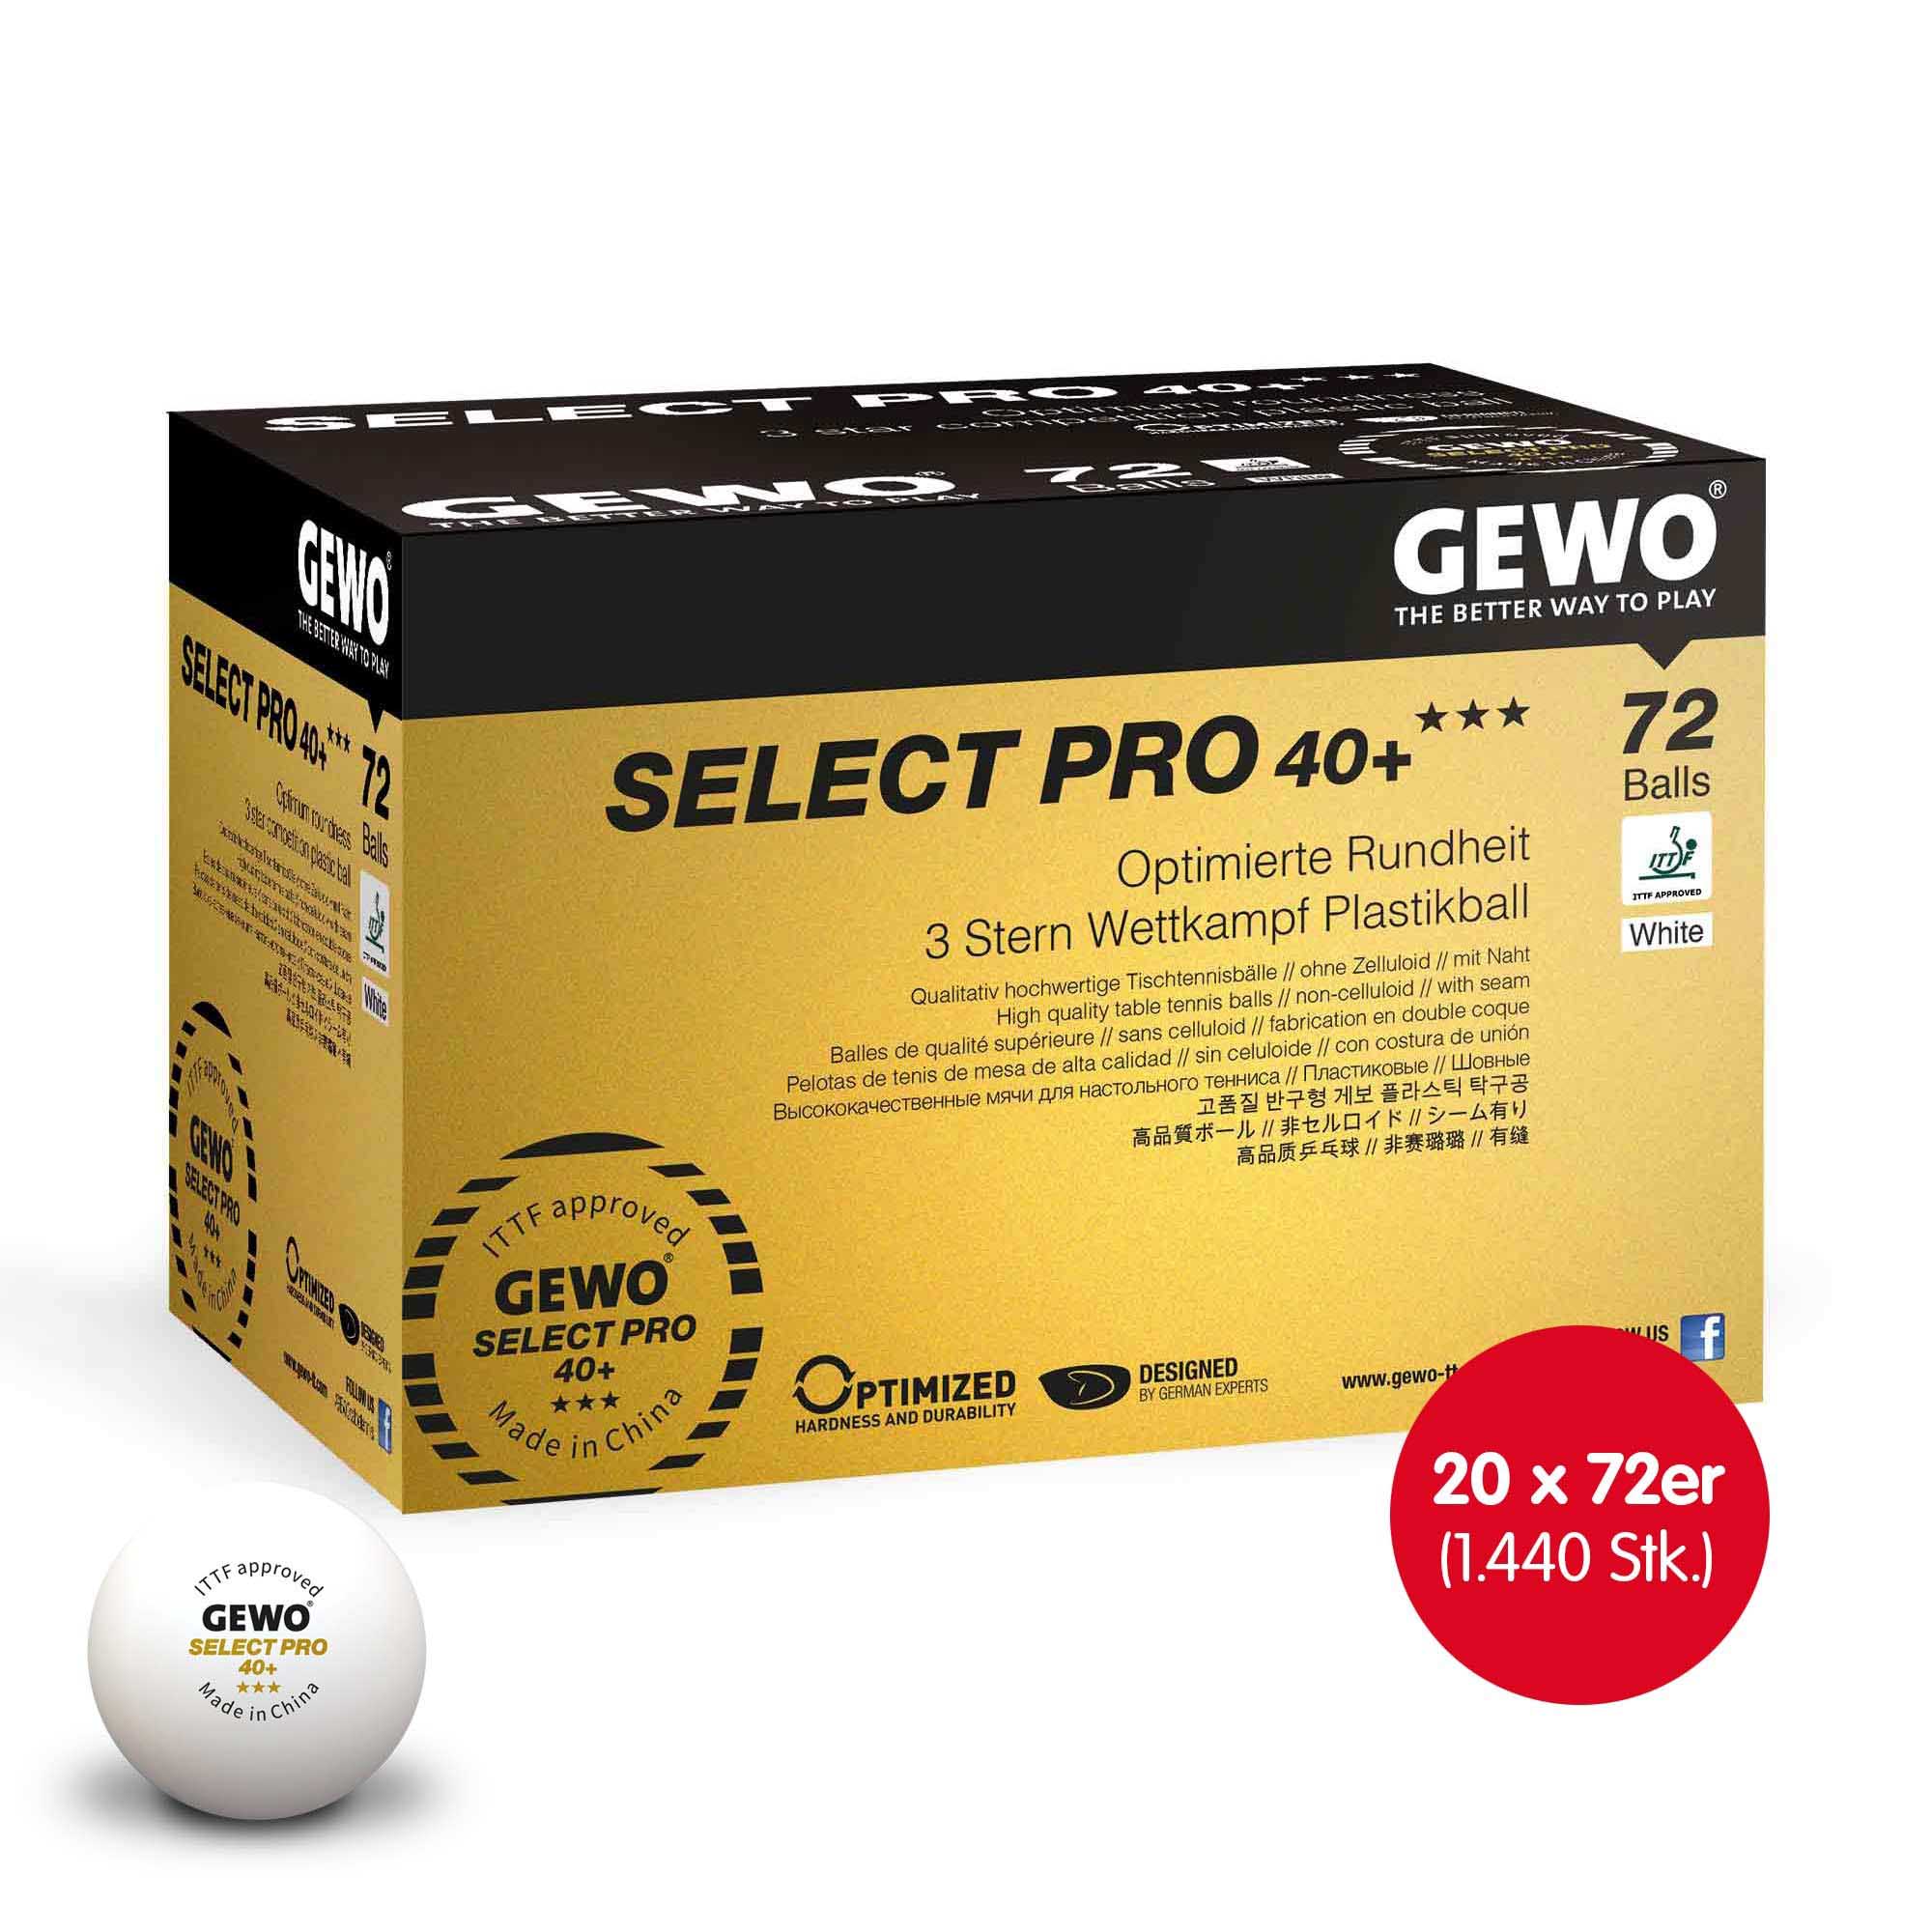 GEWO Select Pro 40+ *** 20x 72er Box white